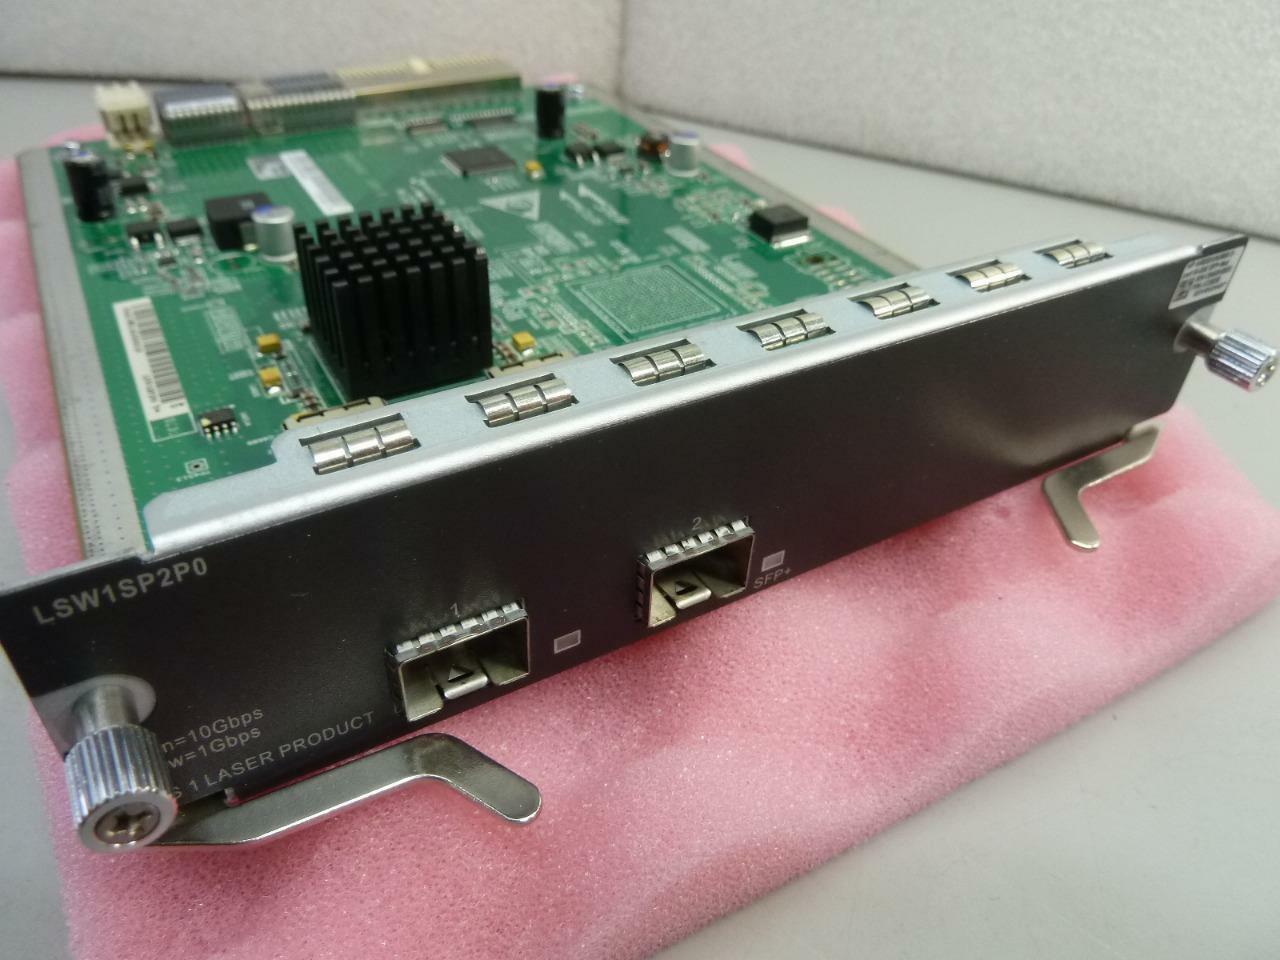 JC092B HPE 5800 2-Port 10GBE SFP+ Module | LSW1SP2P0